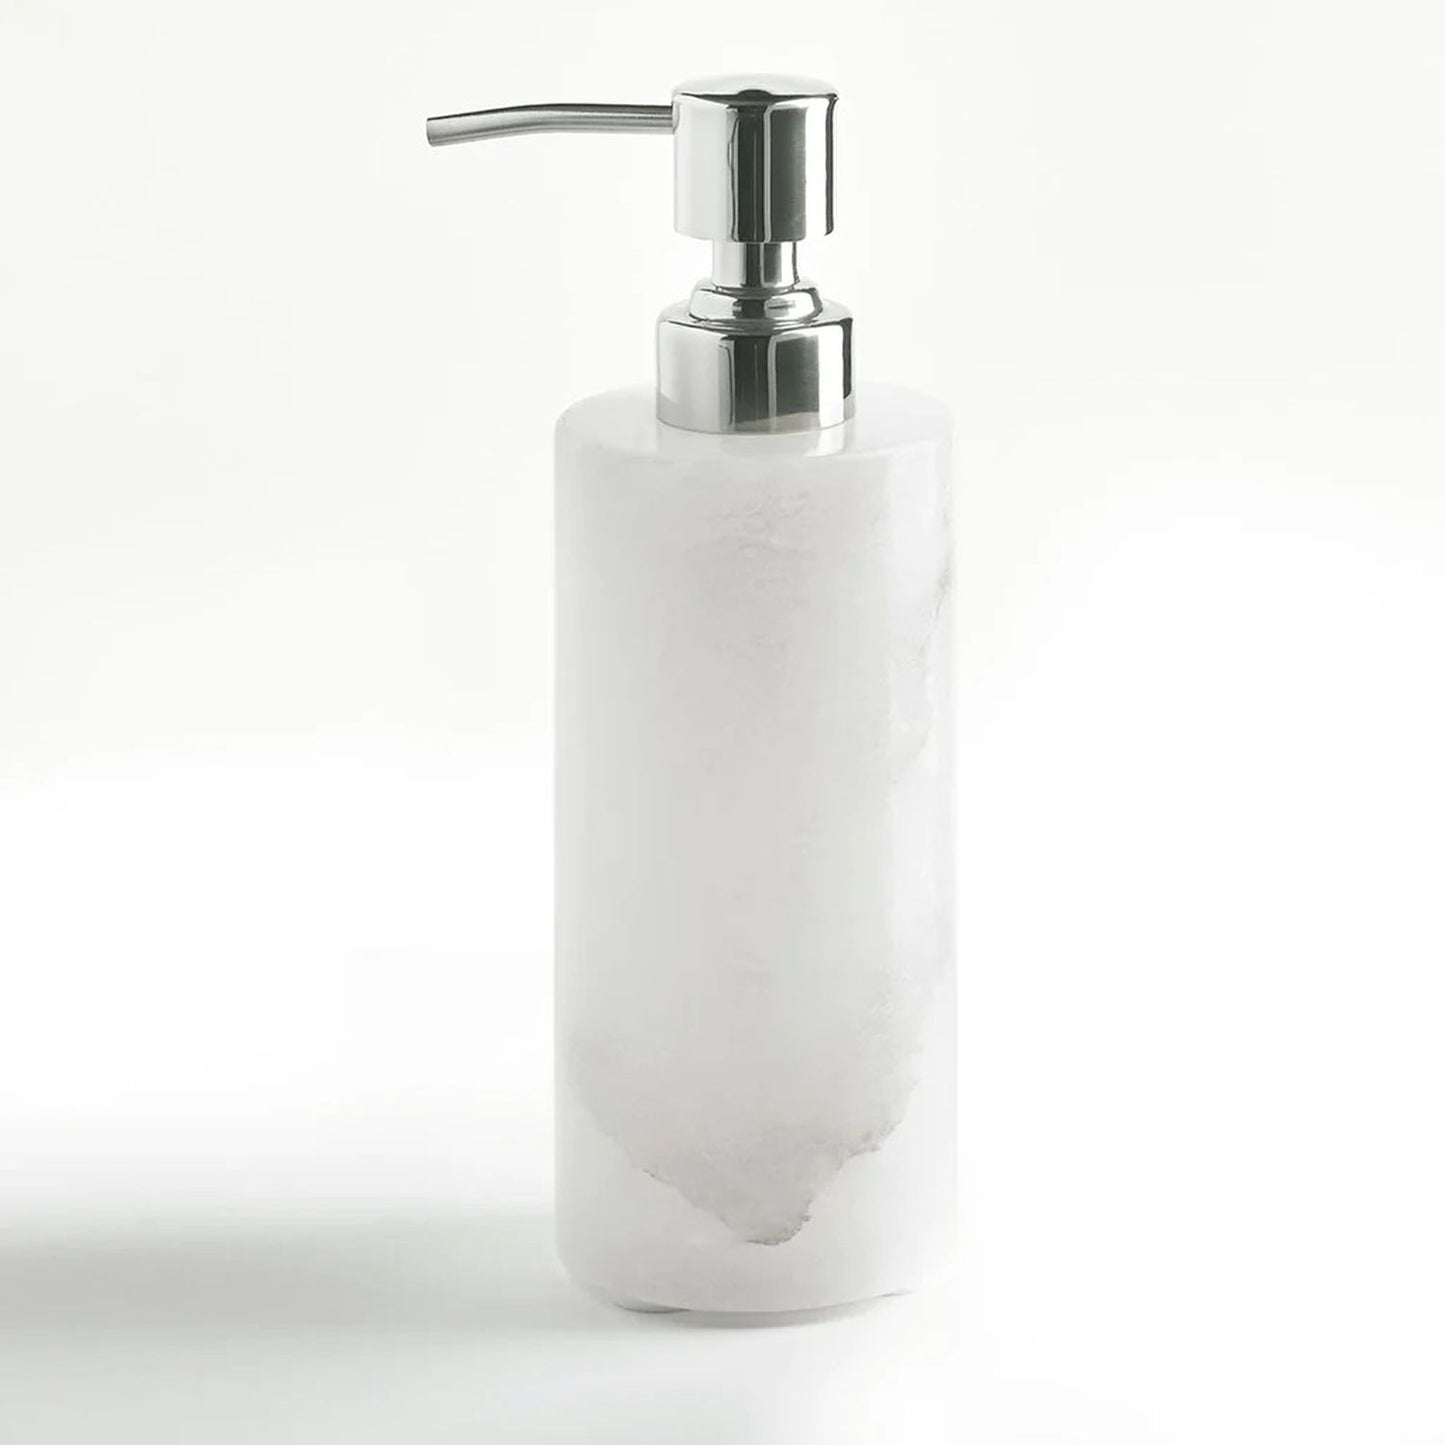 Kassatex Alabaster Bath Accessories Lotion Dispenser